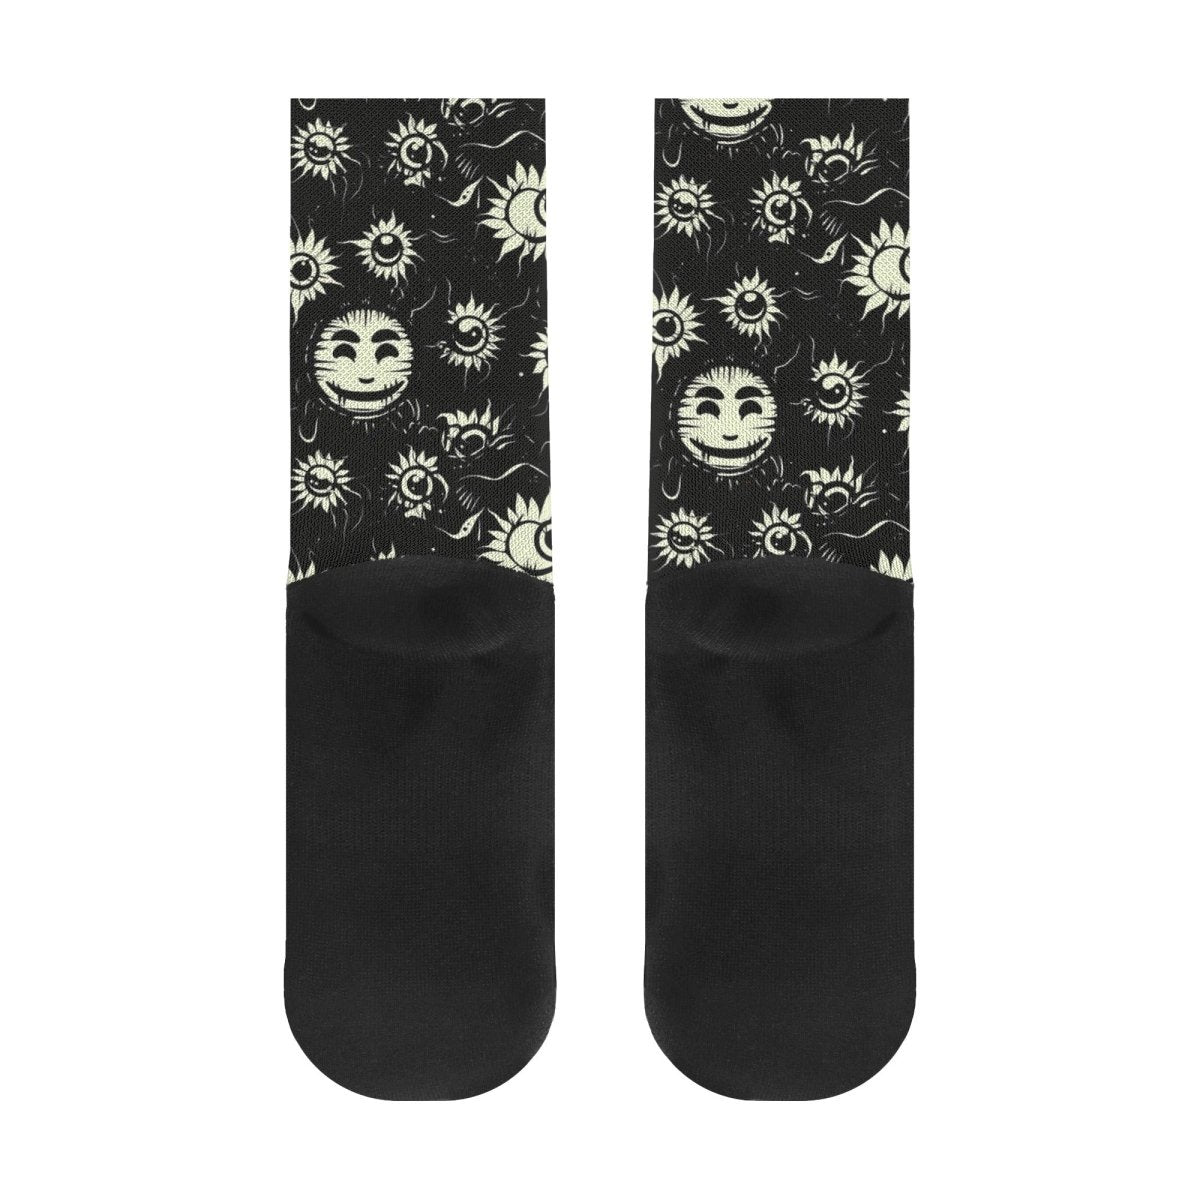 Smiley High Socks - Mainly High